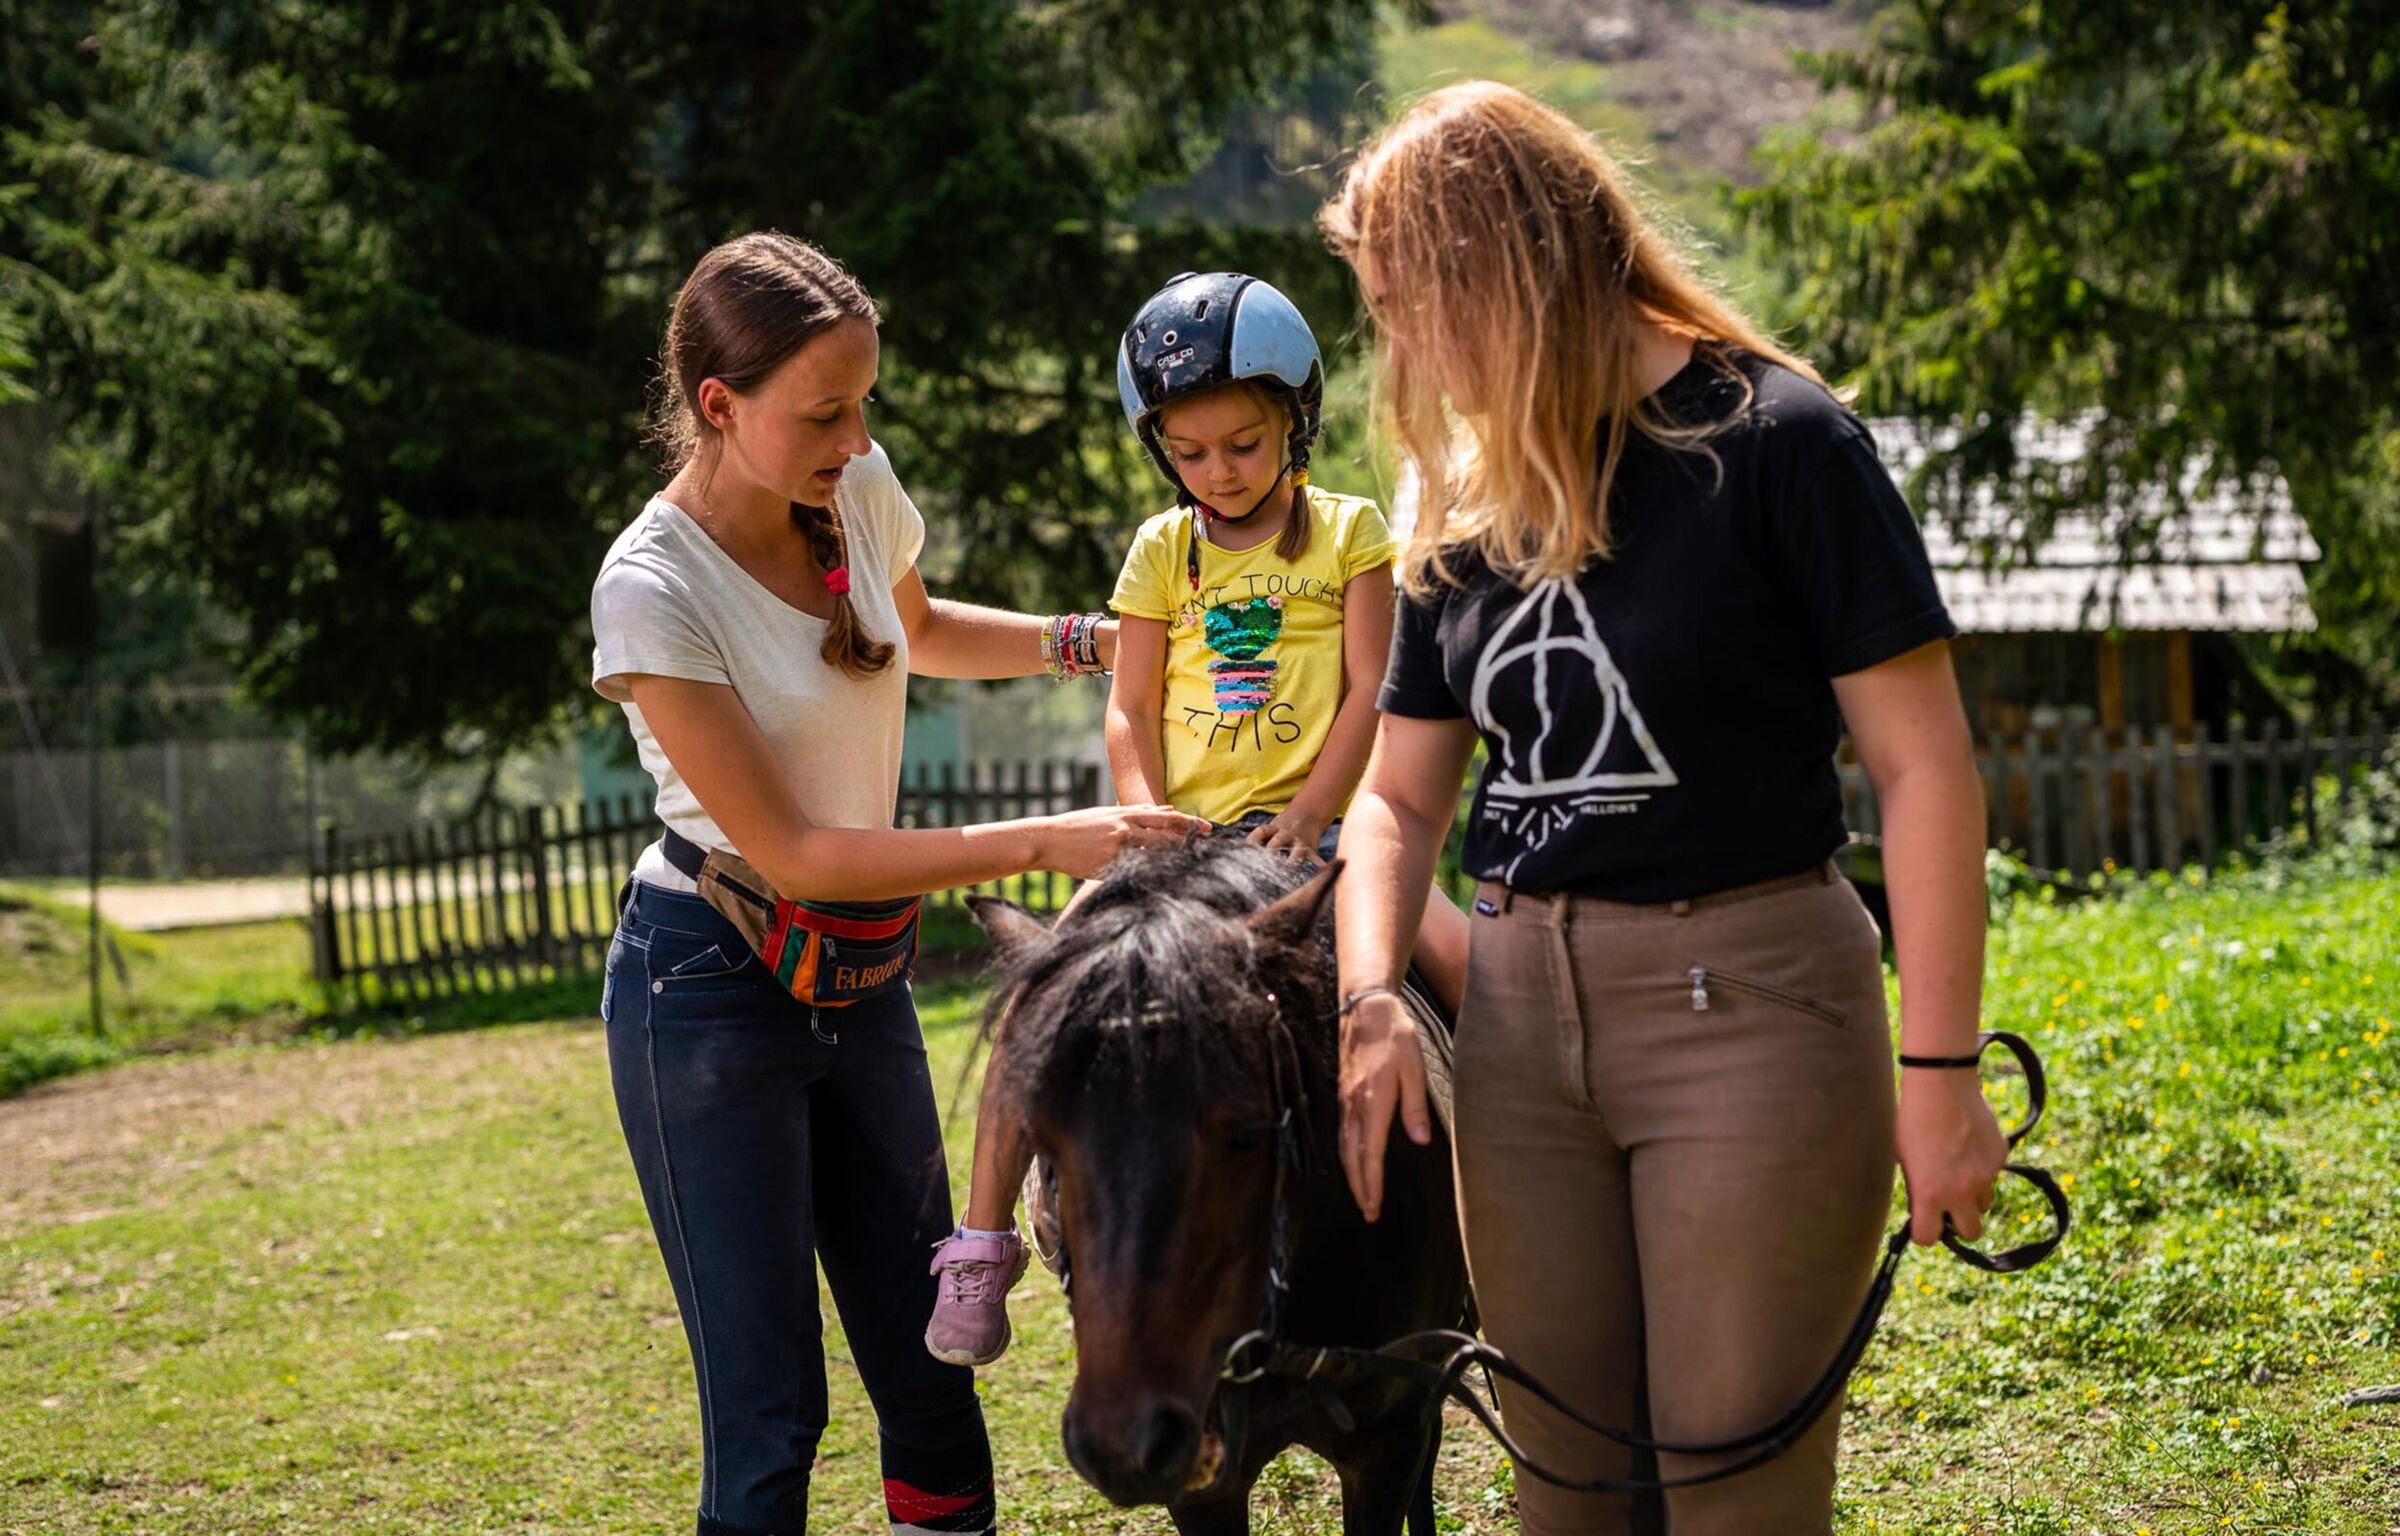 Ein kleines Mädchen mit einem Helm sitzt auf einem dunklen Pony und wird von einer Frau unterstützt